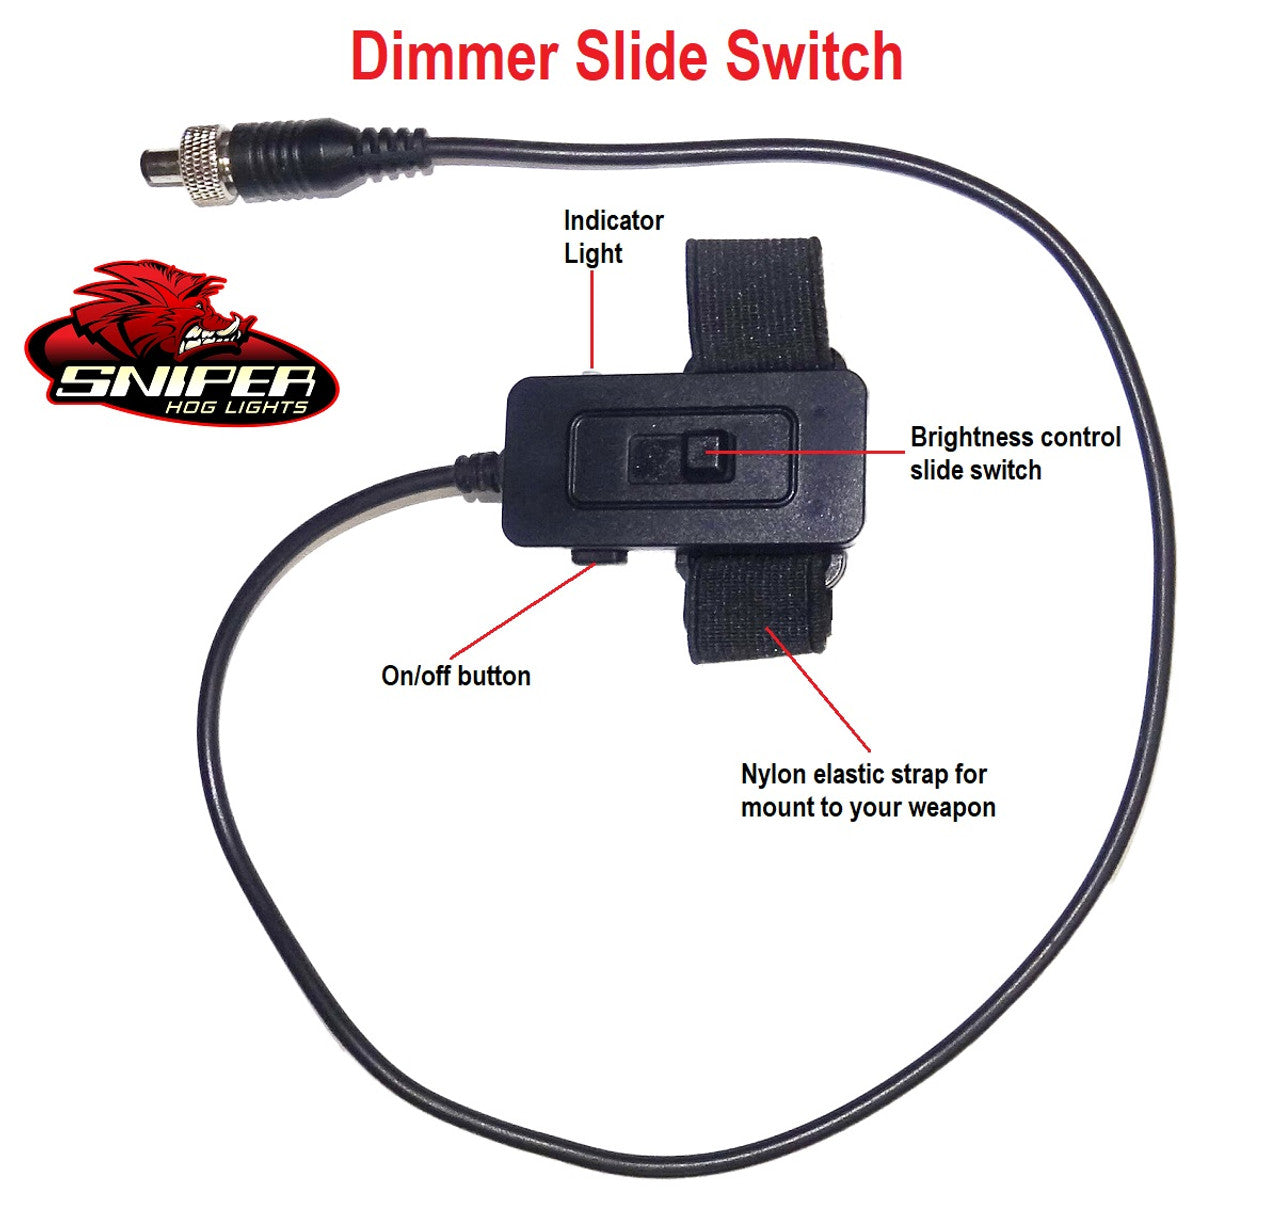 Sniper Hog Lights Dimmer Slide Switch